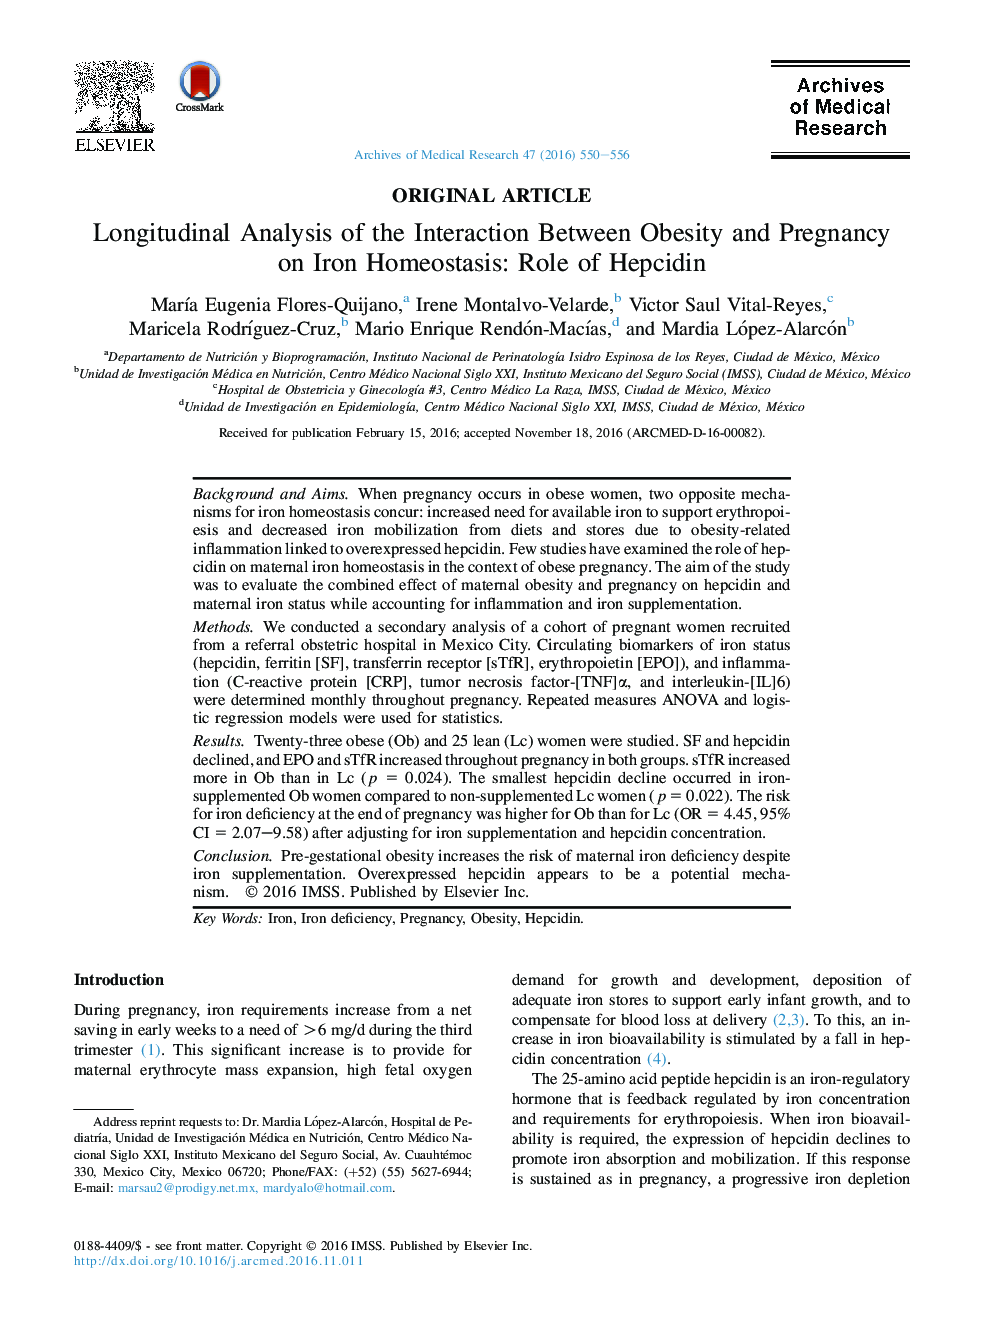 تحلیل طولی تعامل بین چاقی و بارداری بر روی هوموتازات آهن: نقش هپسیدین 